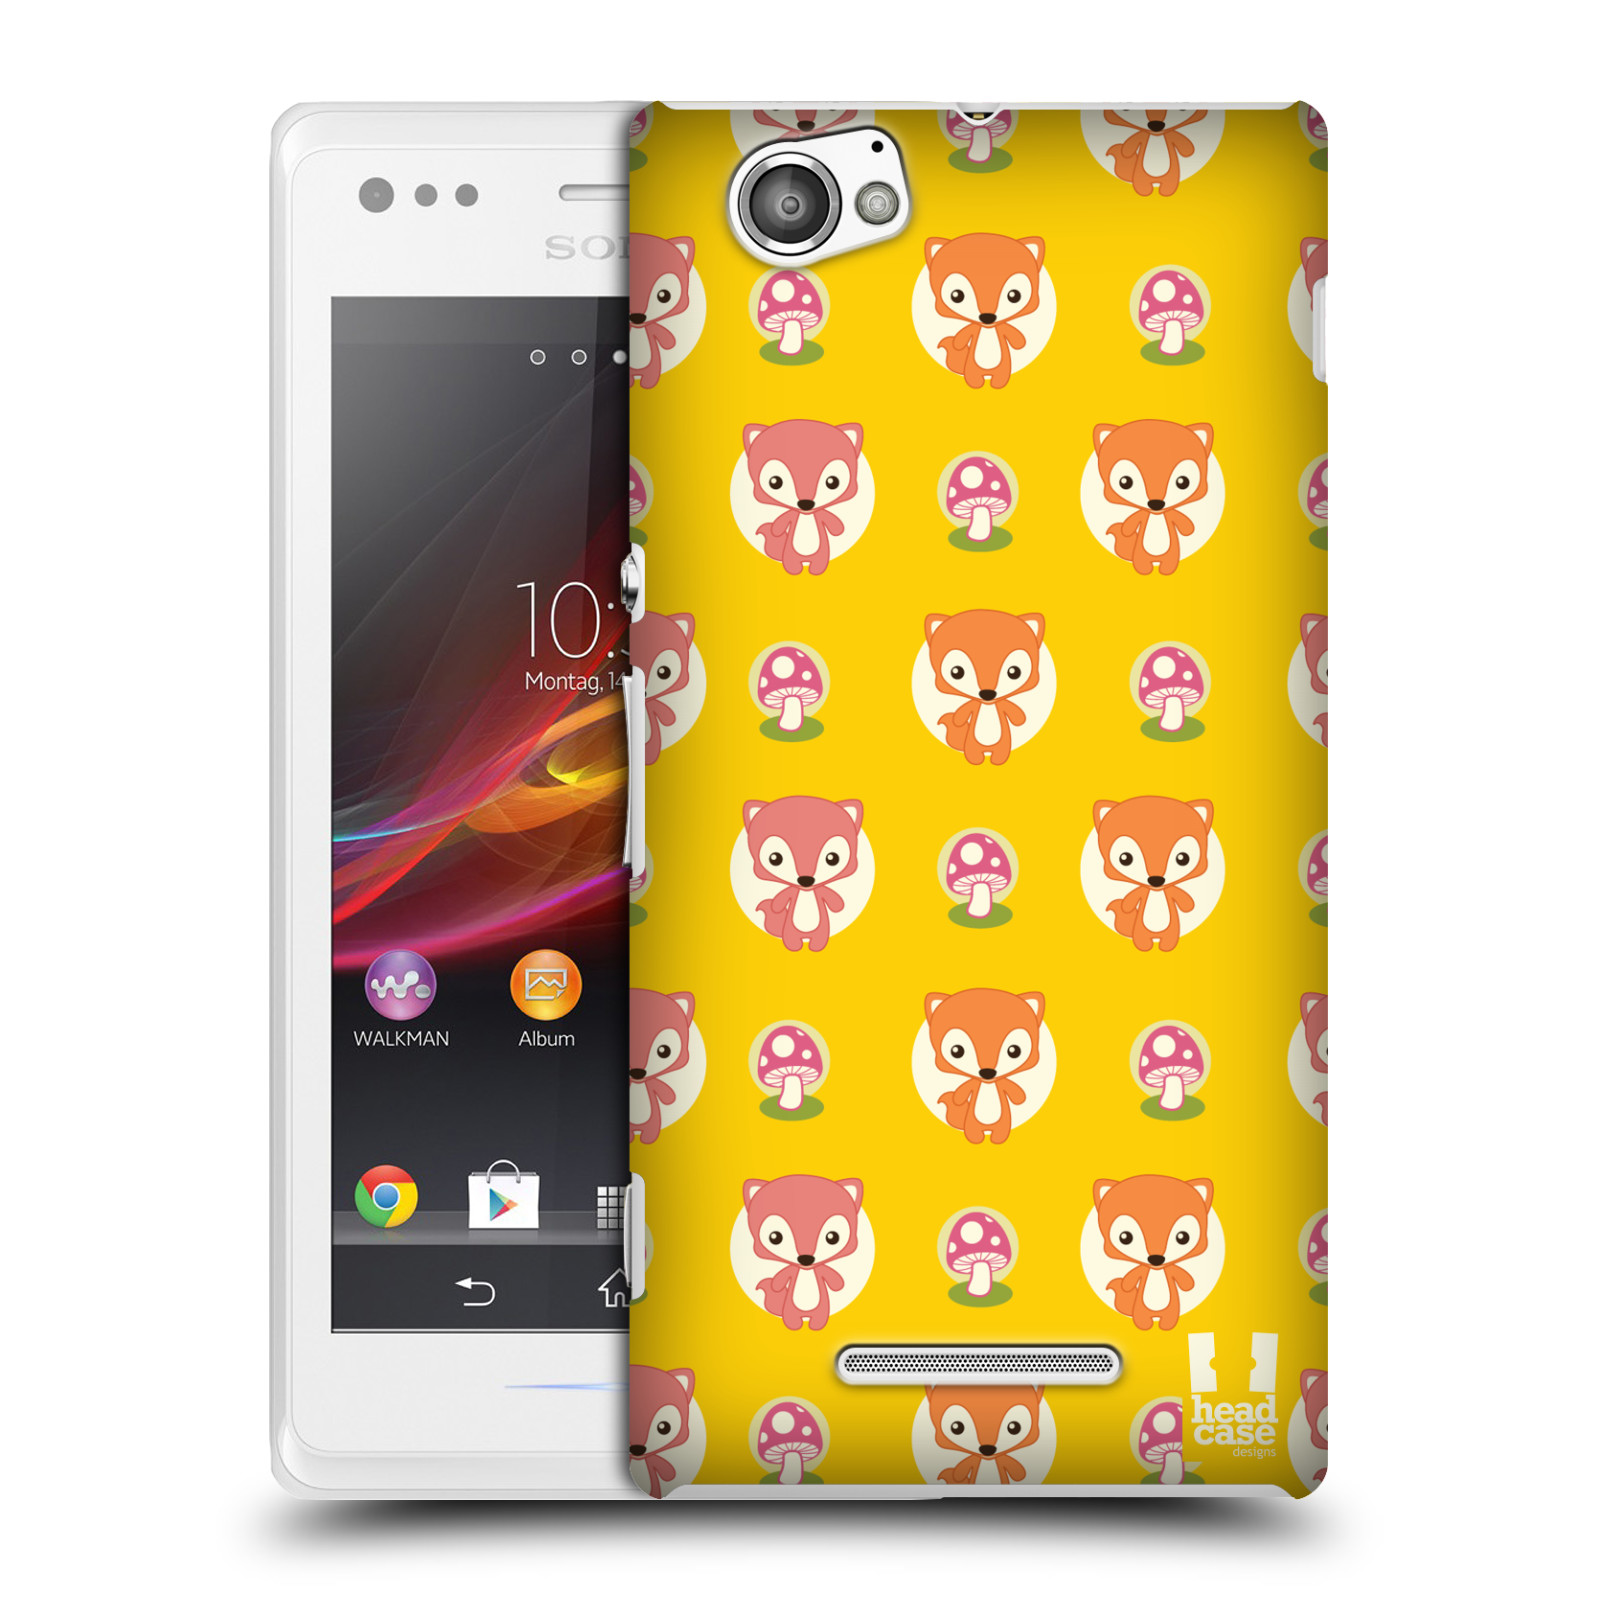 HEAD CASE plastový obal na mobil Sony Xperia M vzor roztomilé zvířecí vzory lištičky